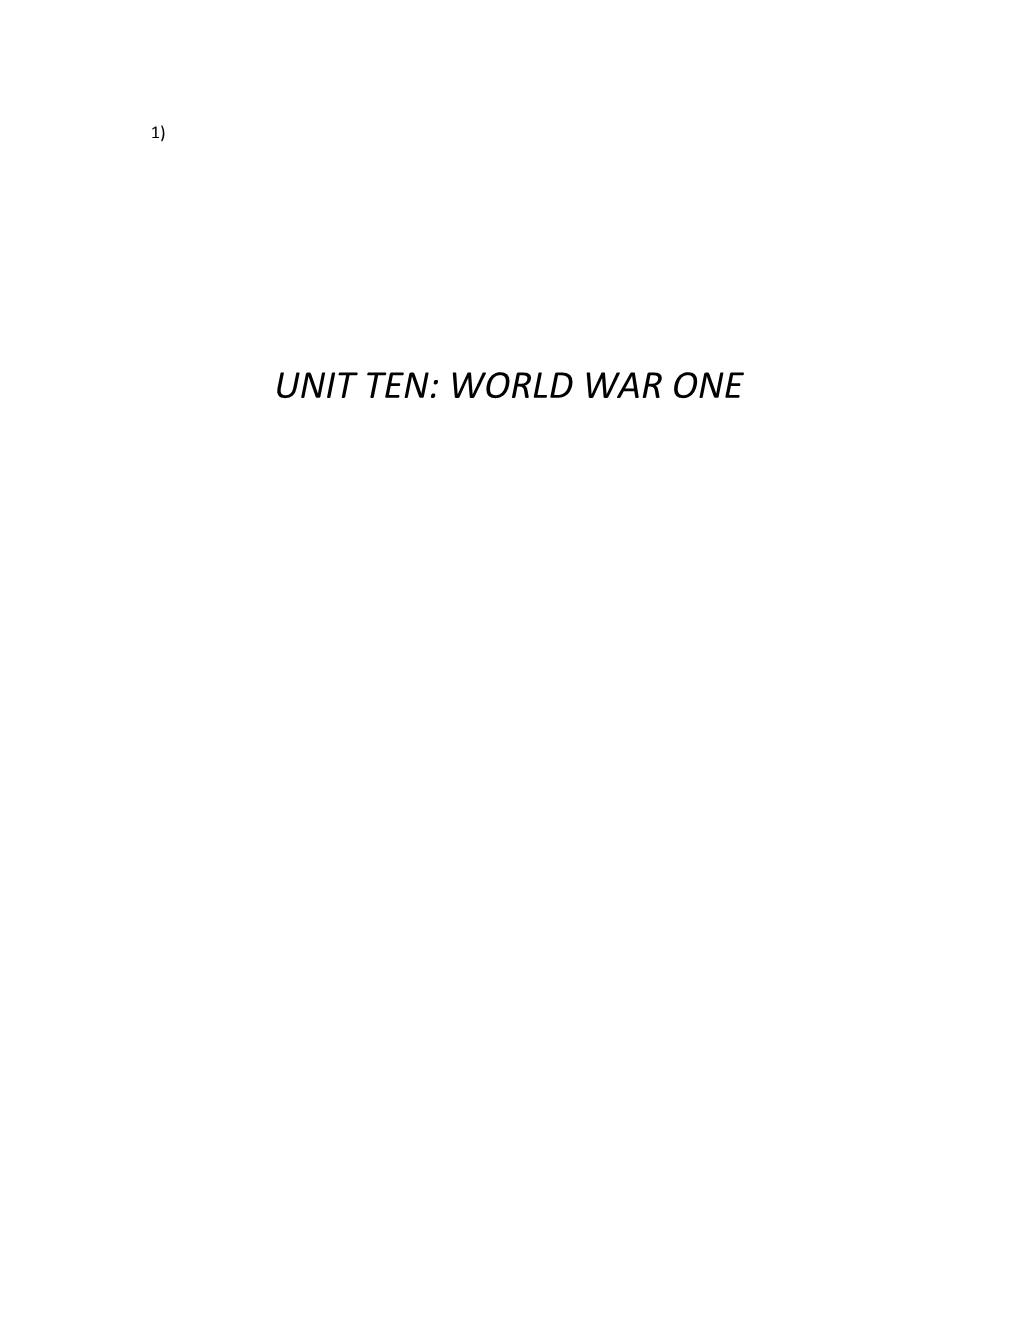 Unit Ten: World War One